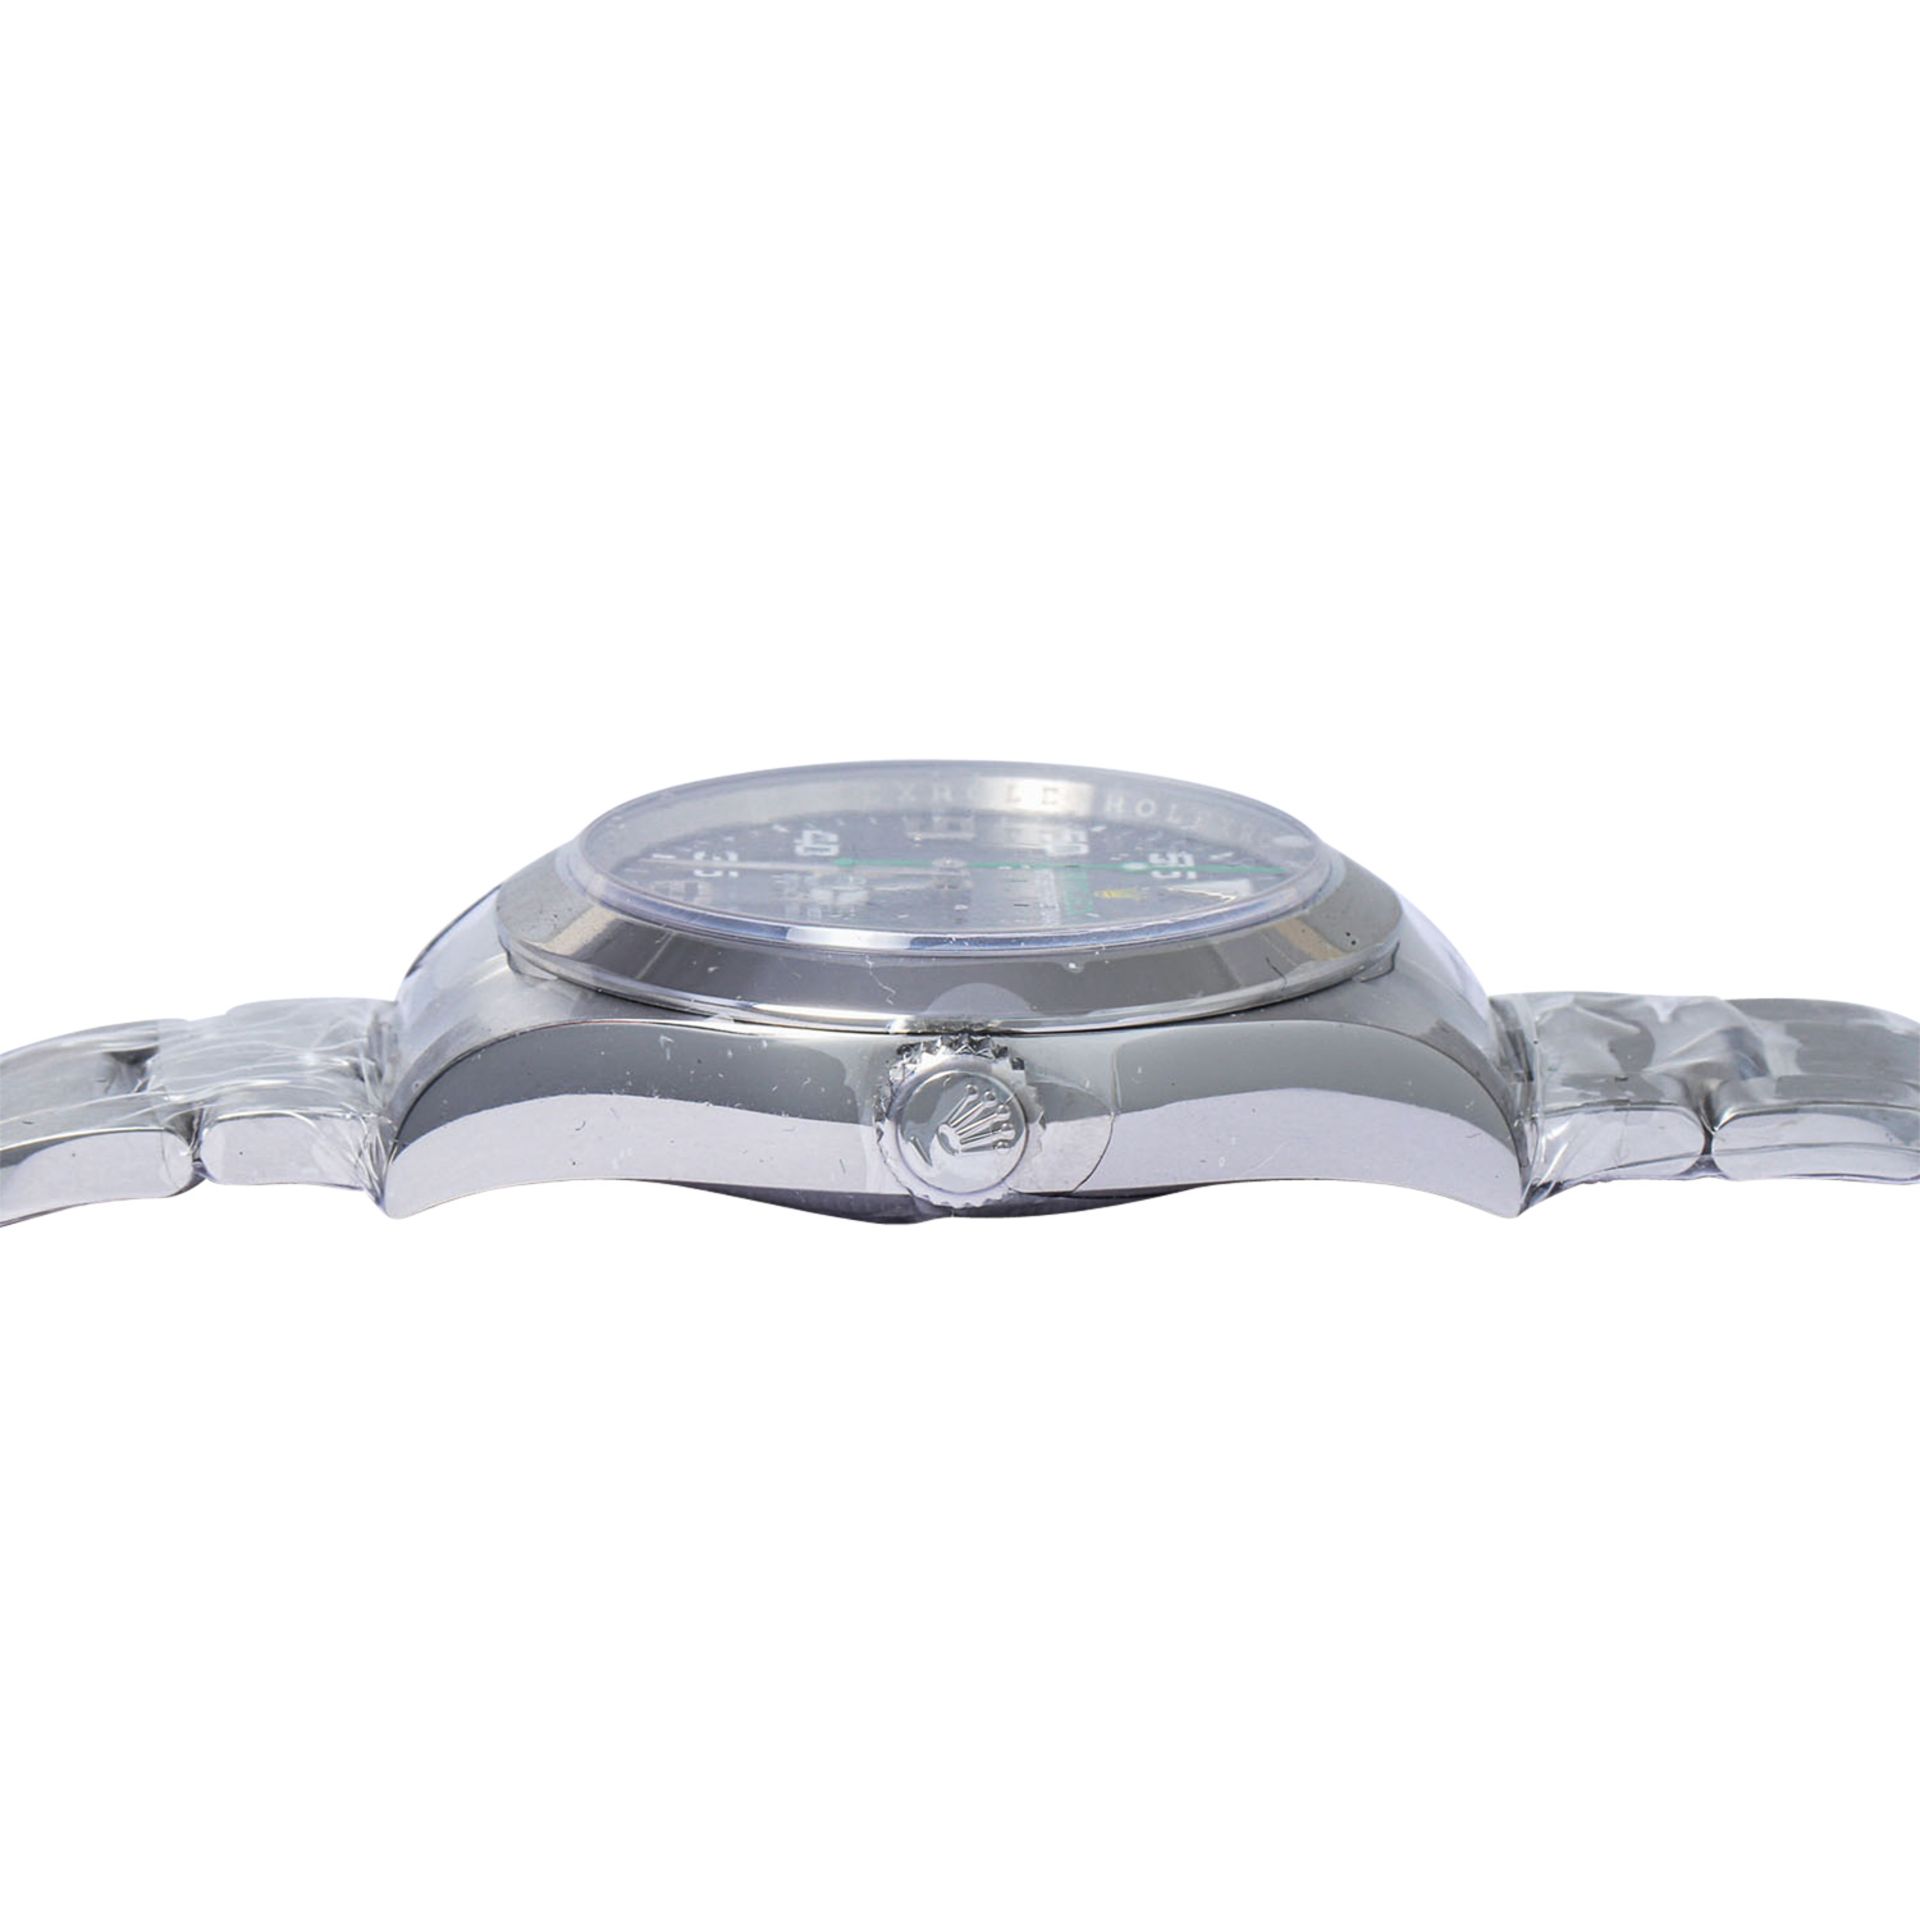 ROLEX Air King, Ref. 116900-0001. Armbanduhr. Eingestelltes Modell. - Bild 3 aus 7